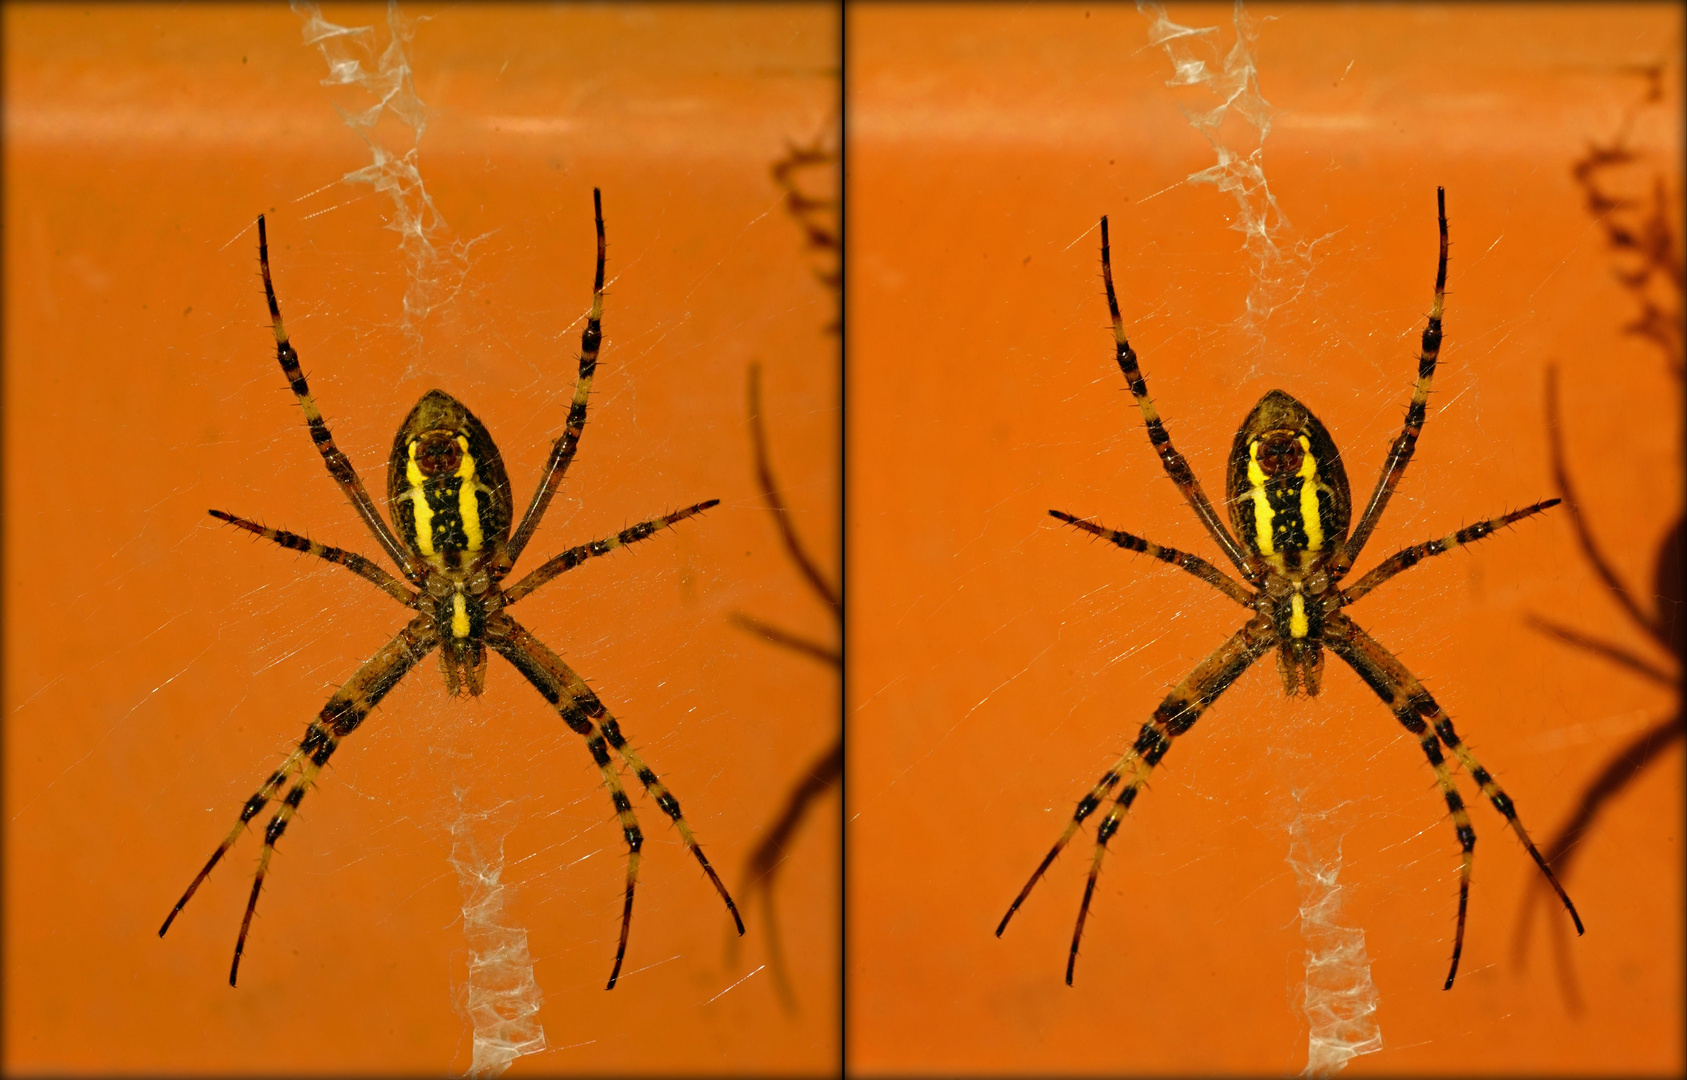  Spinne im Netz (3D-X-View)